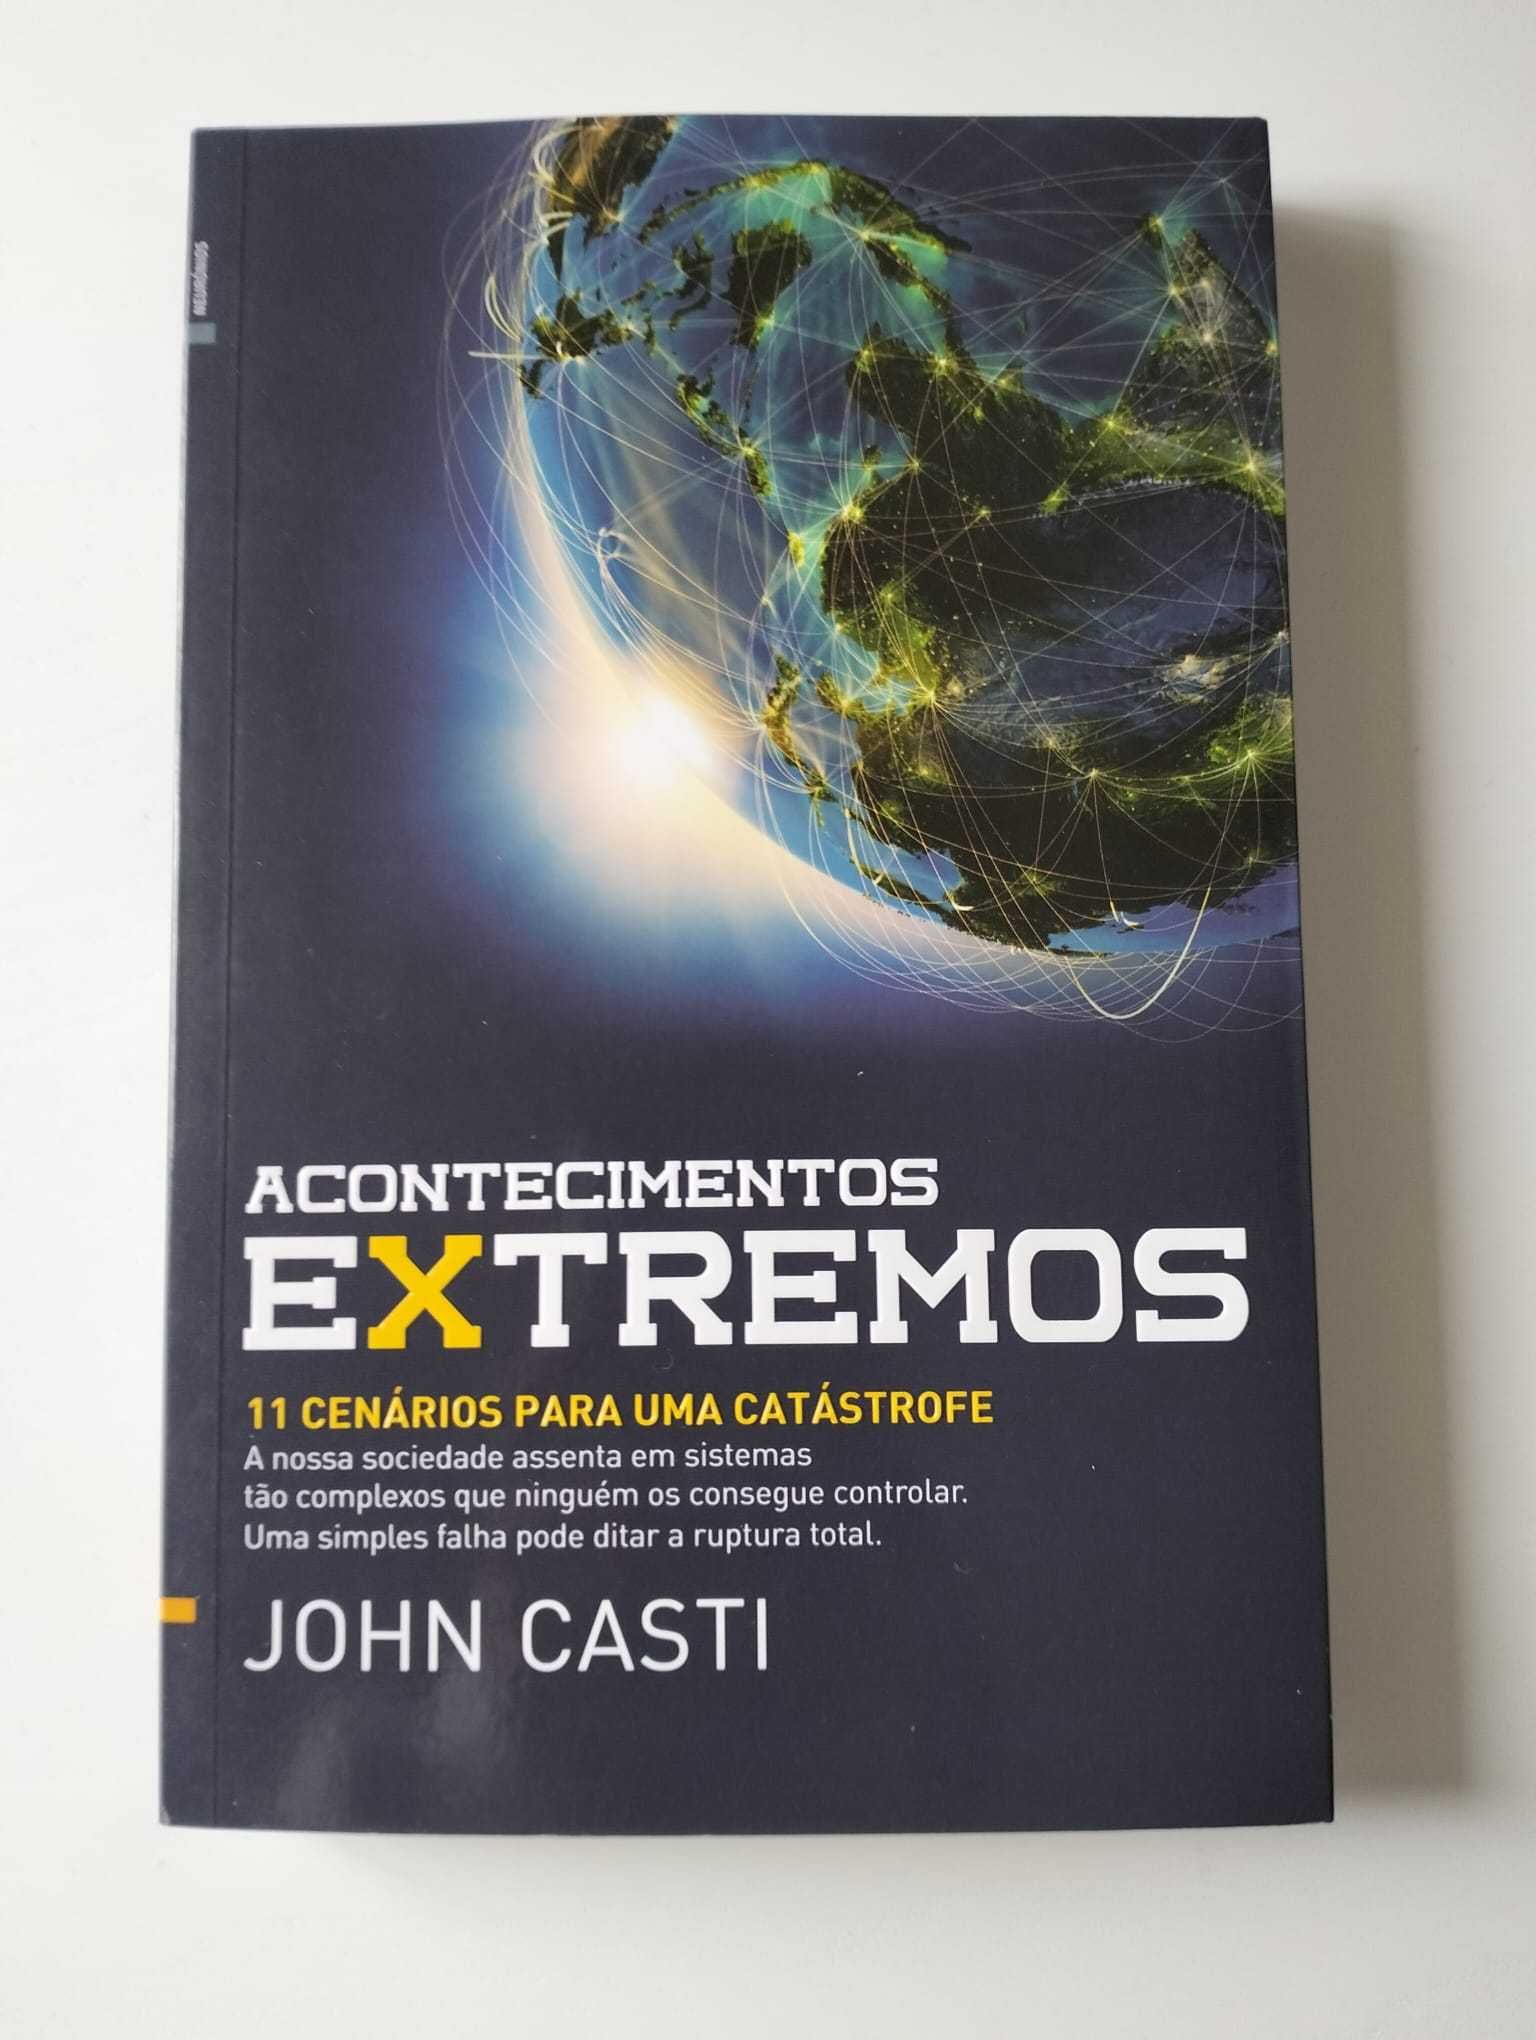 Livro "Acontecimentos Extremos" - John Casti